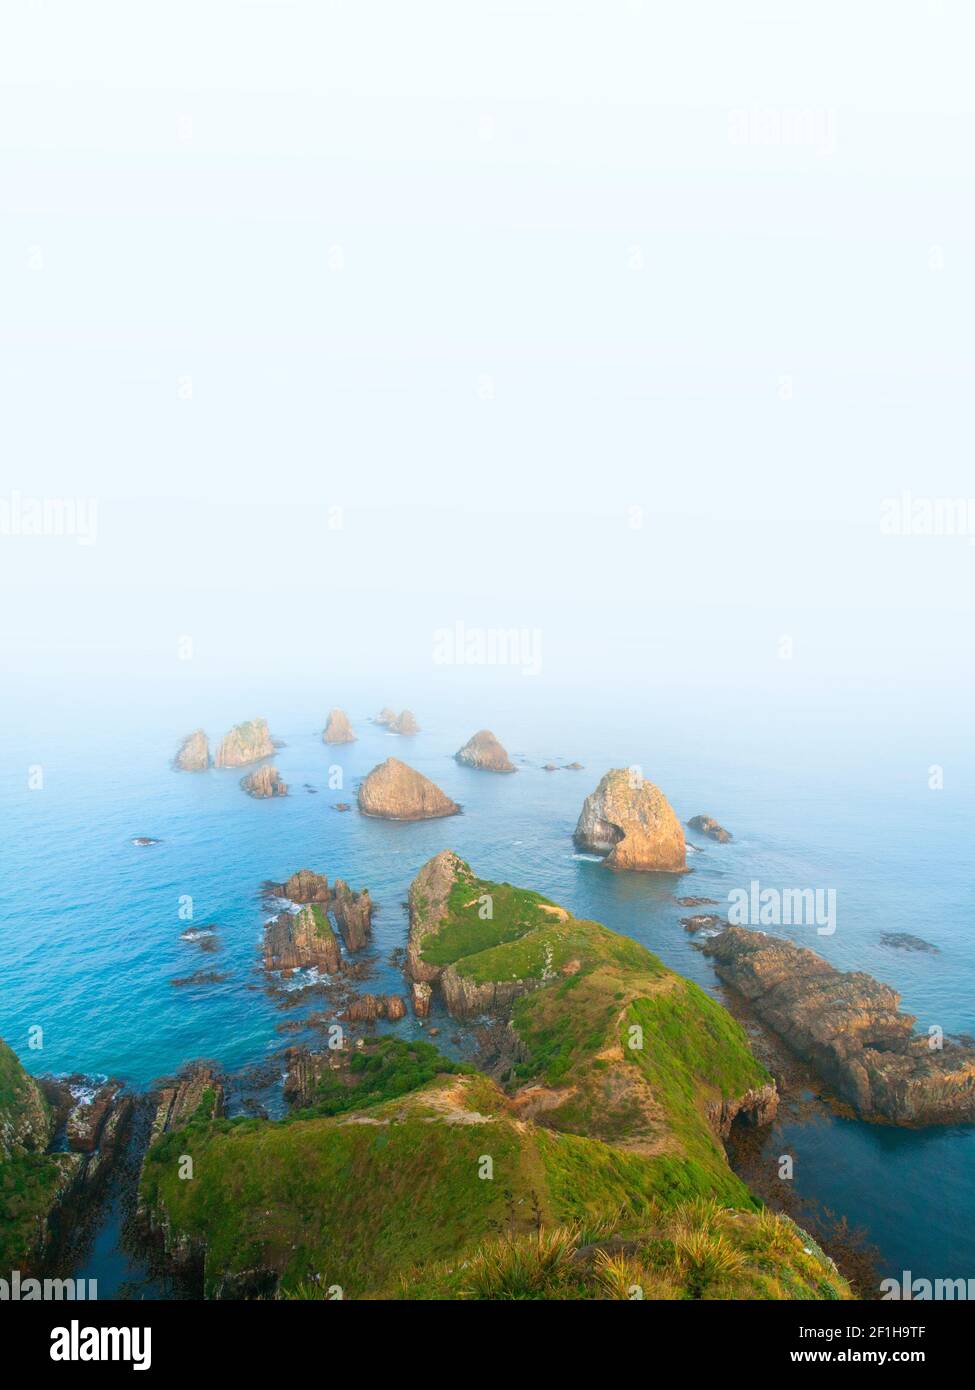 Les nuggets, les îlots rocheux emblématiques de Nugget point disparaissent dans la brume blanche abstraite infinie du sud de l'océan Pacifique, la côte des Catlins, au sud Banque D'Images